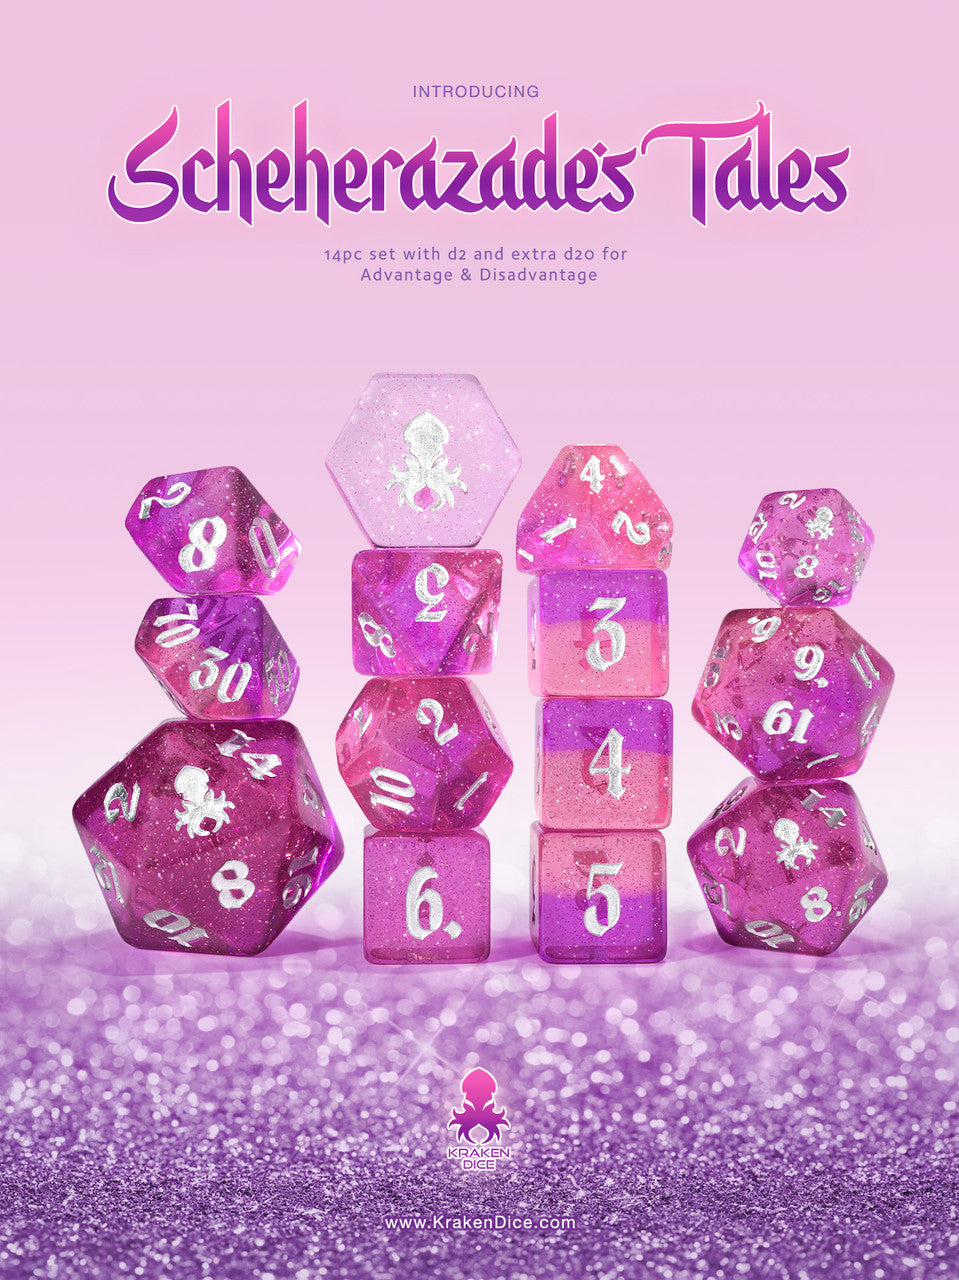 Scheherazade's Tales 14pc Dice Set